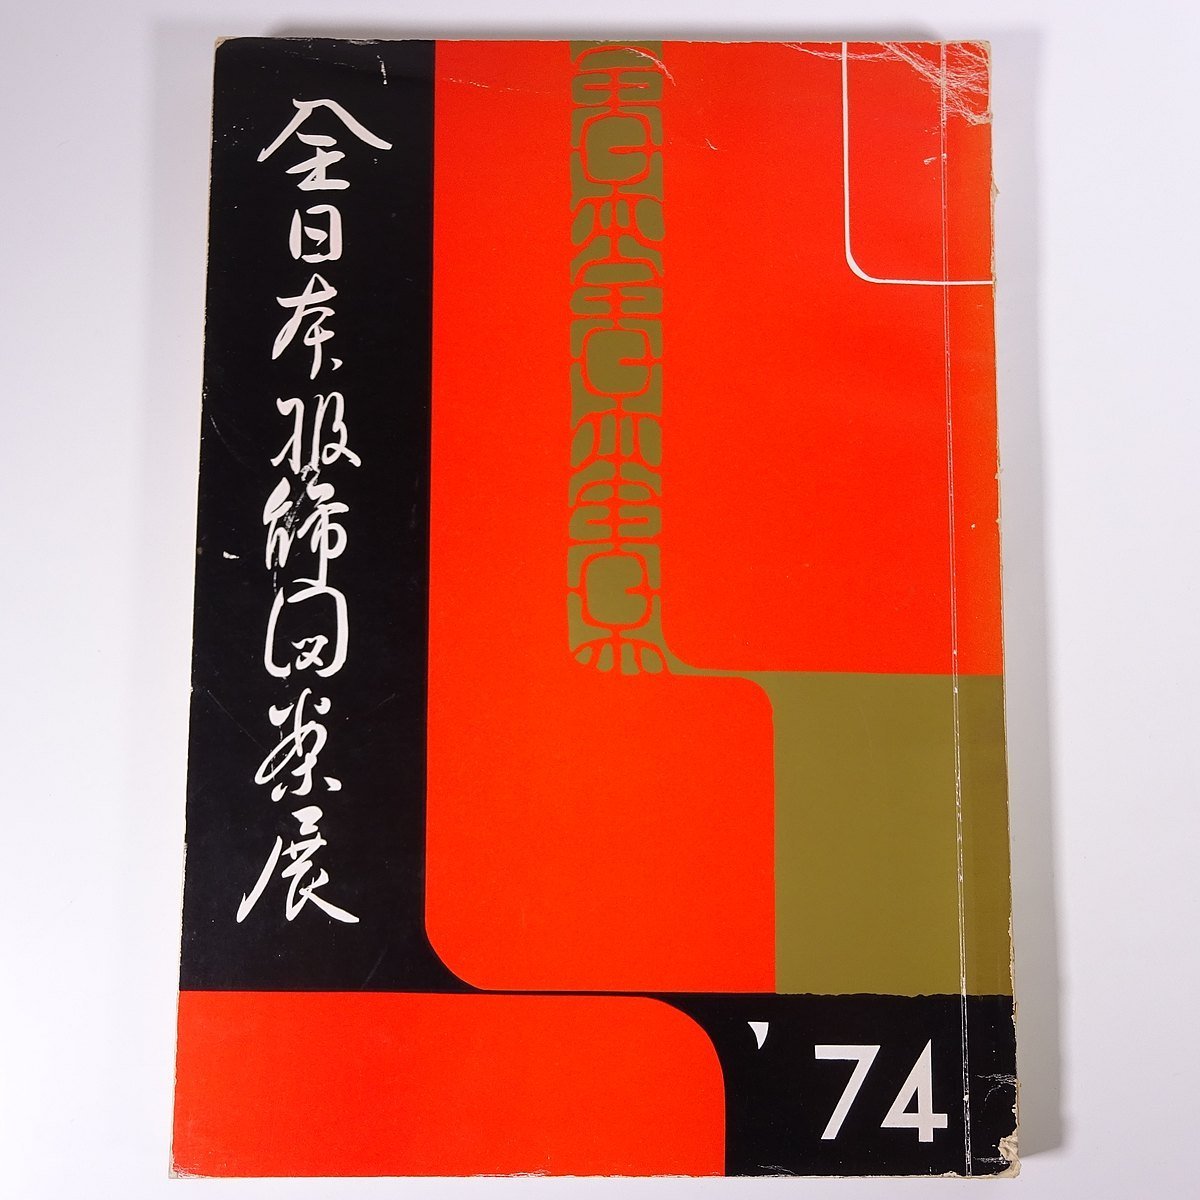 [शिपिंग शुल्क 800 येन] ऑल जापान फैशन डिज़ाइन प्रदर्शनी कैटलॉग 41 मारिया शोबो 1973 बड़ी पुस्तक चित्रण कैटलॉग फैशन डिज़ाइन, चित्रकारी, कला पुस्तक, संग्रह, सूची